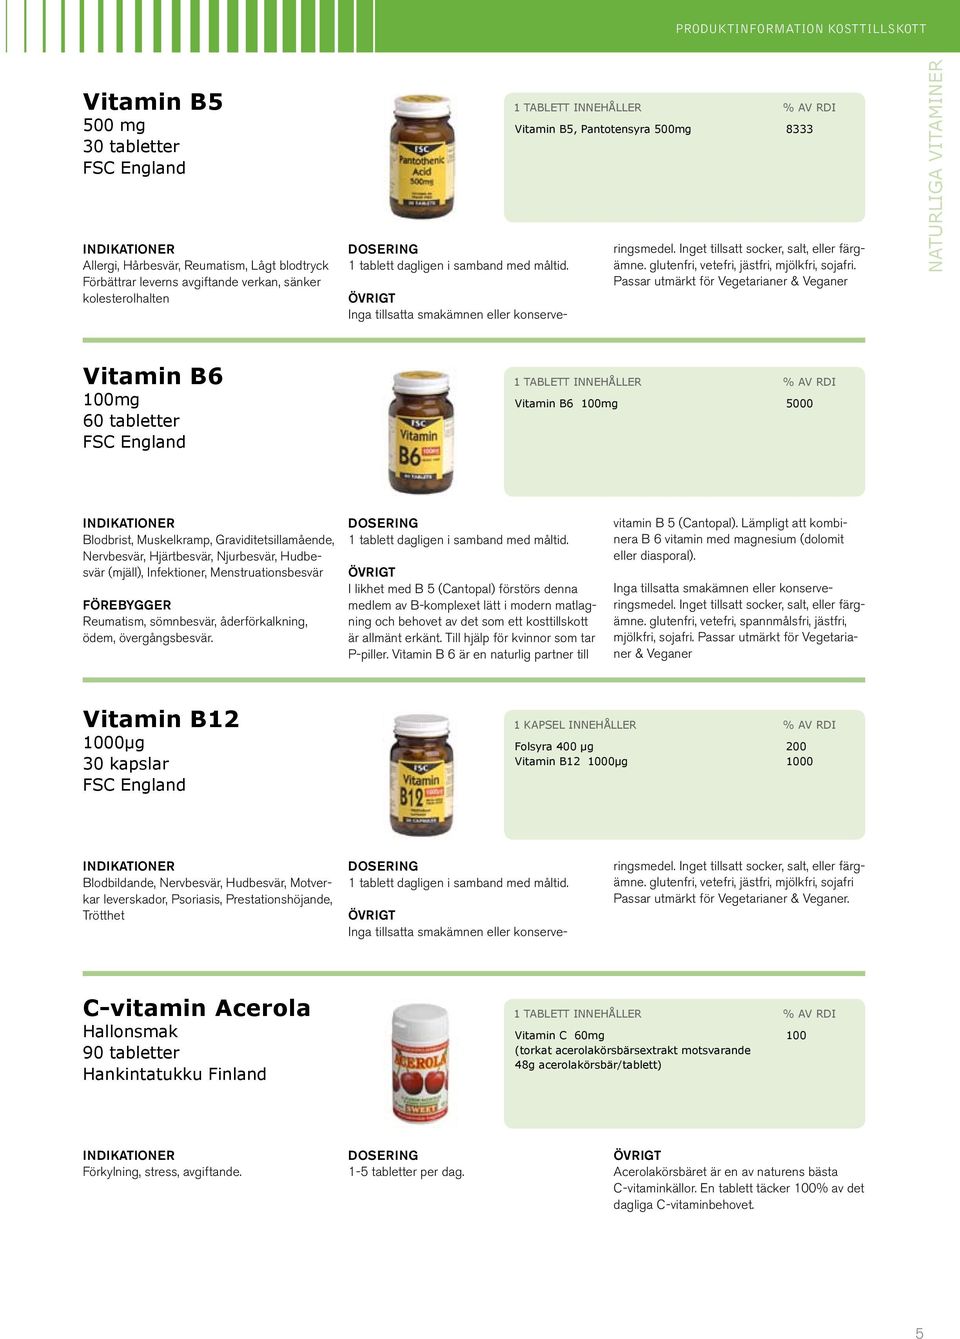 Passar utmärkt för Vegetarianer & Veganer naturliga vitaminer Vitamin B6 100mg 60 tabletter 1 tablett innehåller % av RDI Vitamin B6 100mg 5000 Blodbrist, Muskelkramp, Graviditetsillamående,